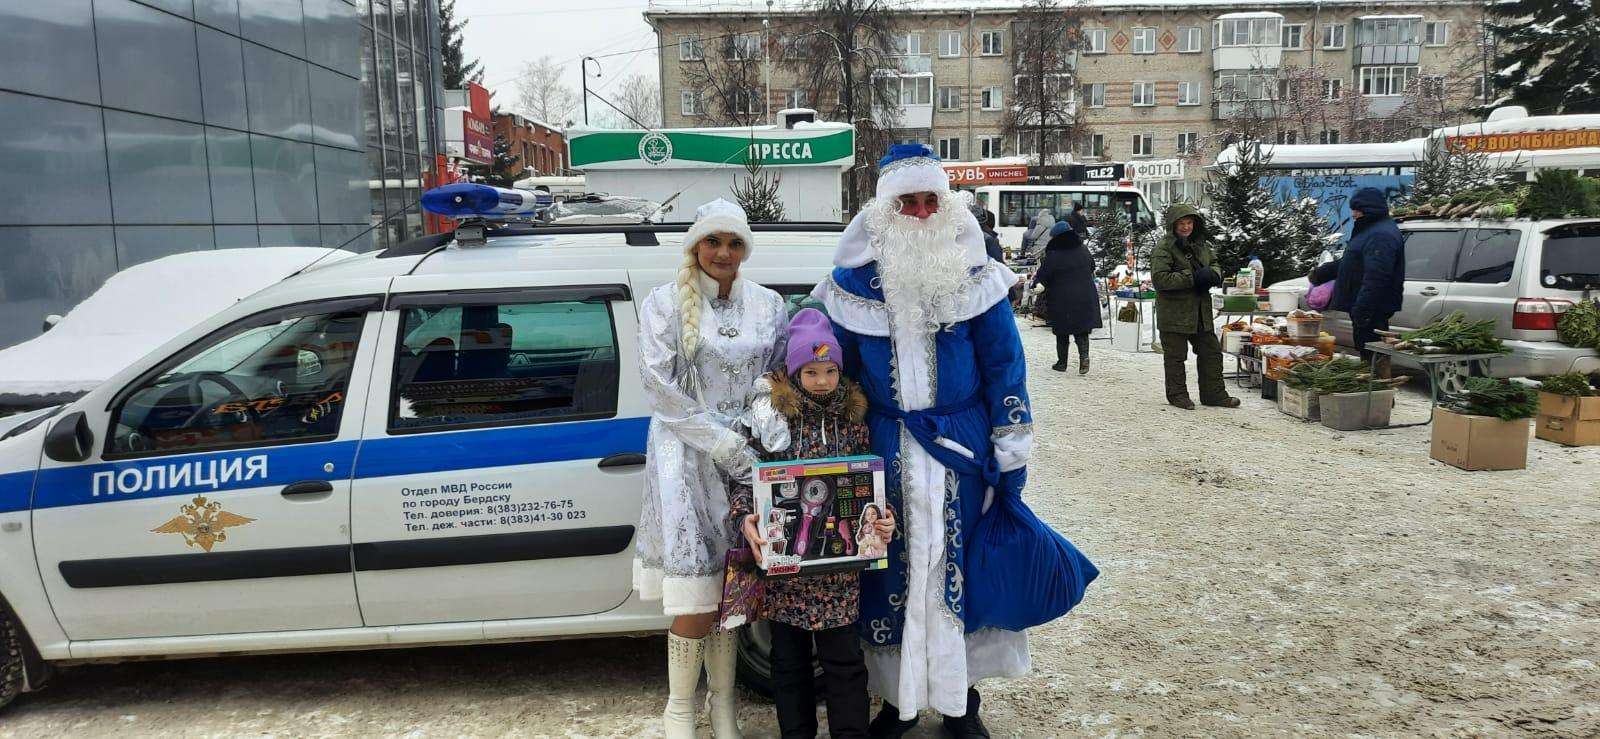 Полицейский Дед Мороз поздравил с Новым годом детей в Бердске